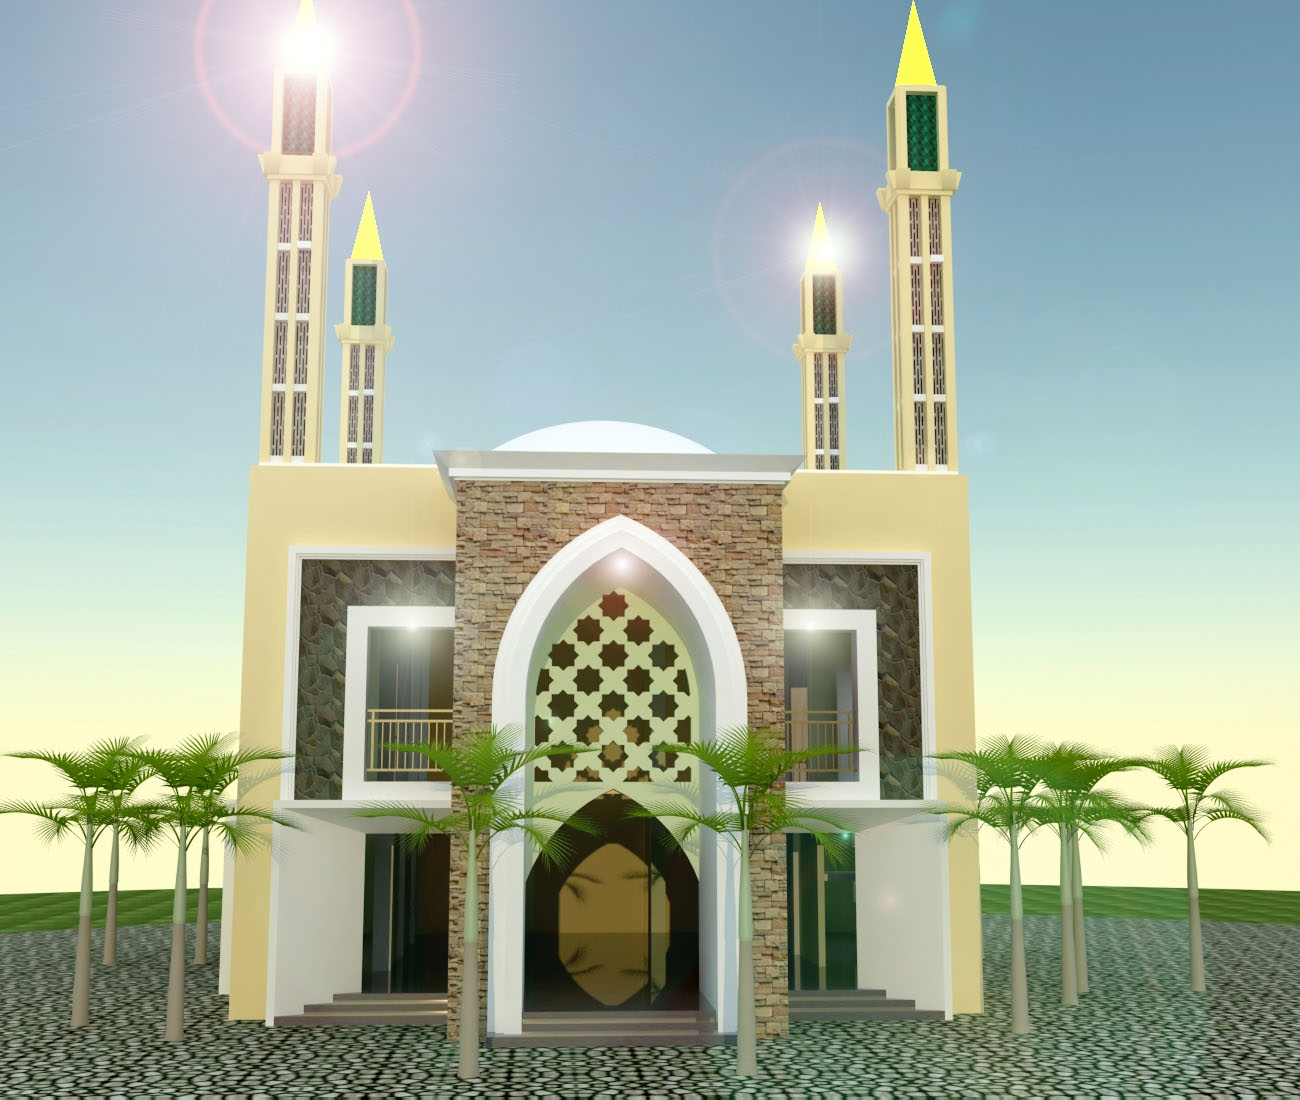 Gambar Masjid Minimalis Modern 2 Lantai - Nusagates